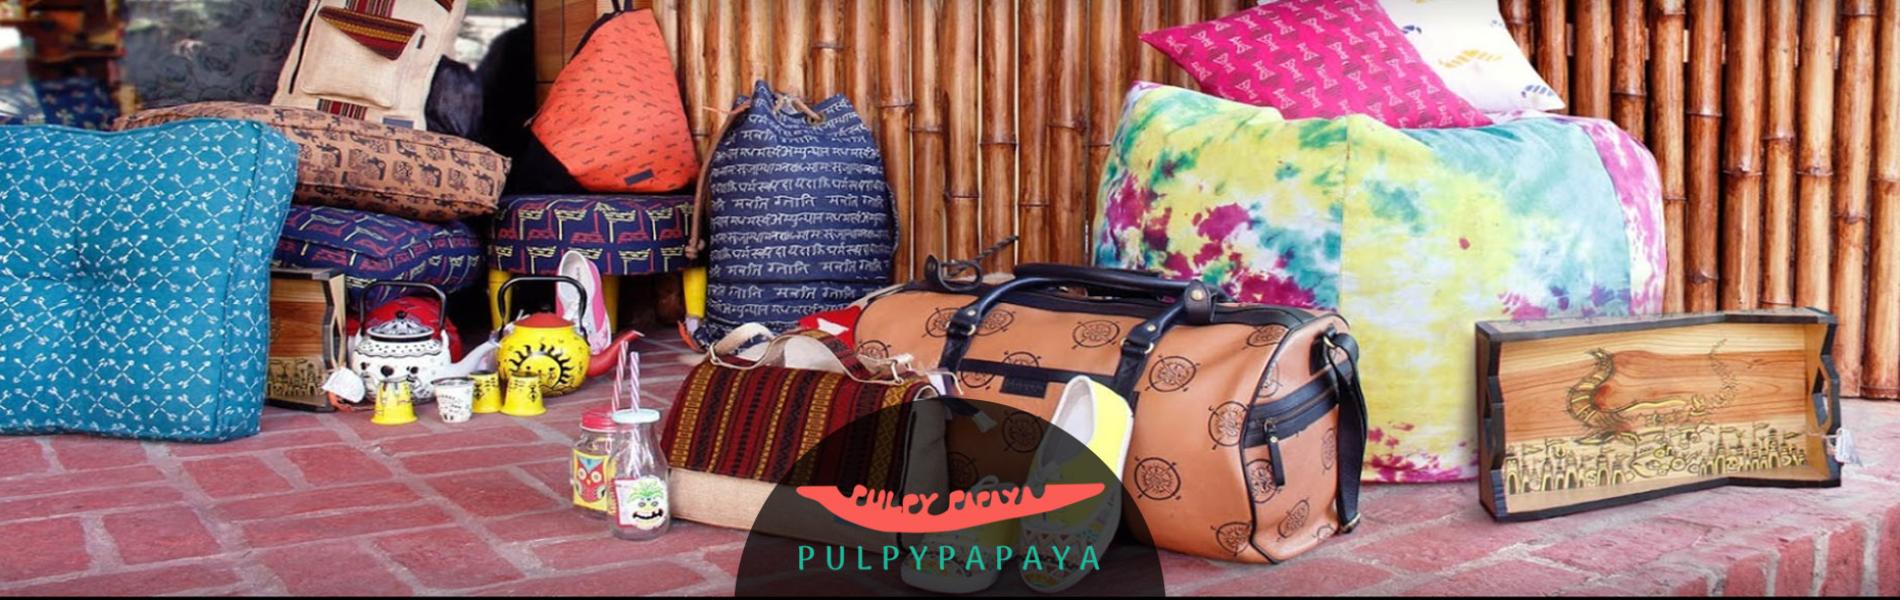 Pulpypapaya